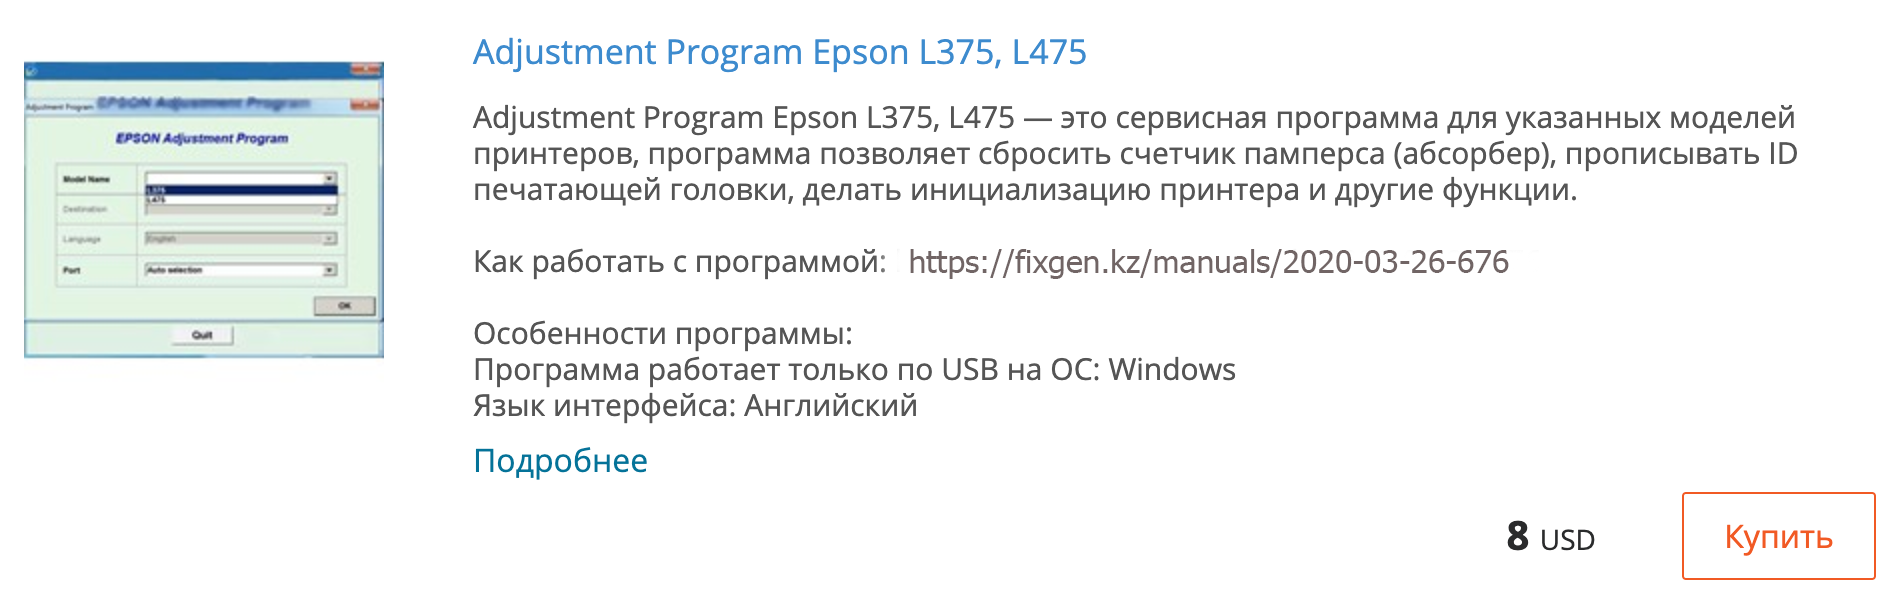 Купить Adjustment program Epson L375, L475